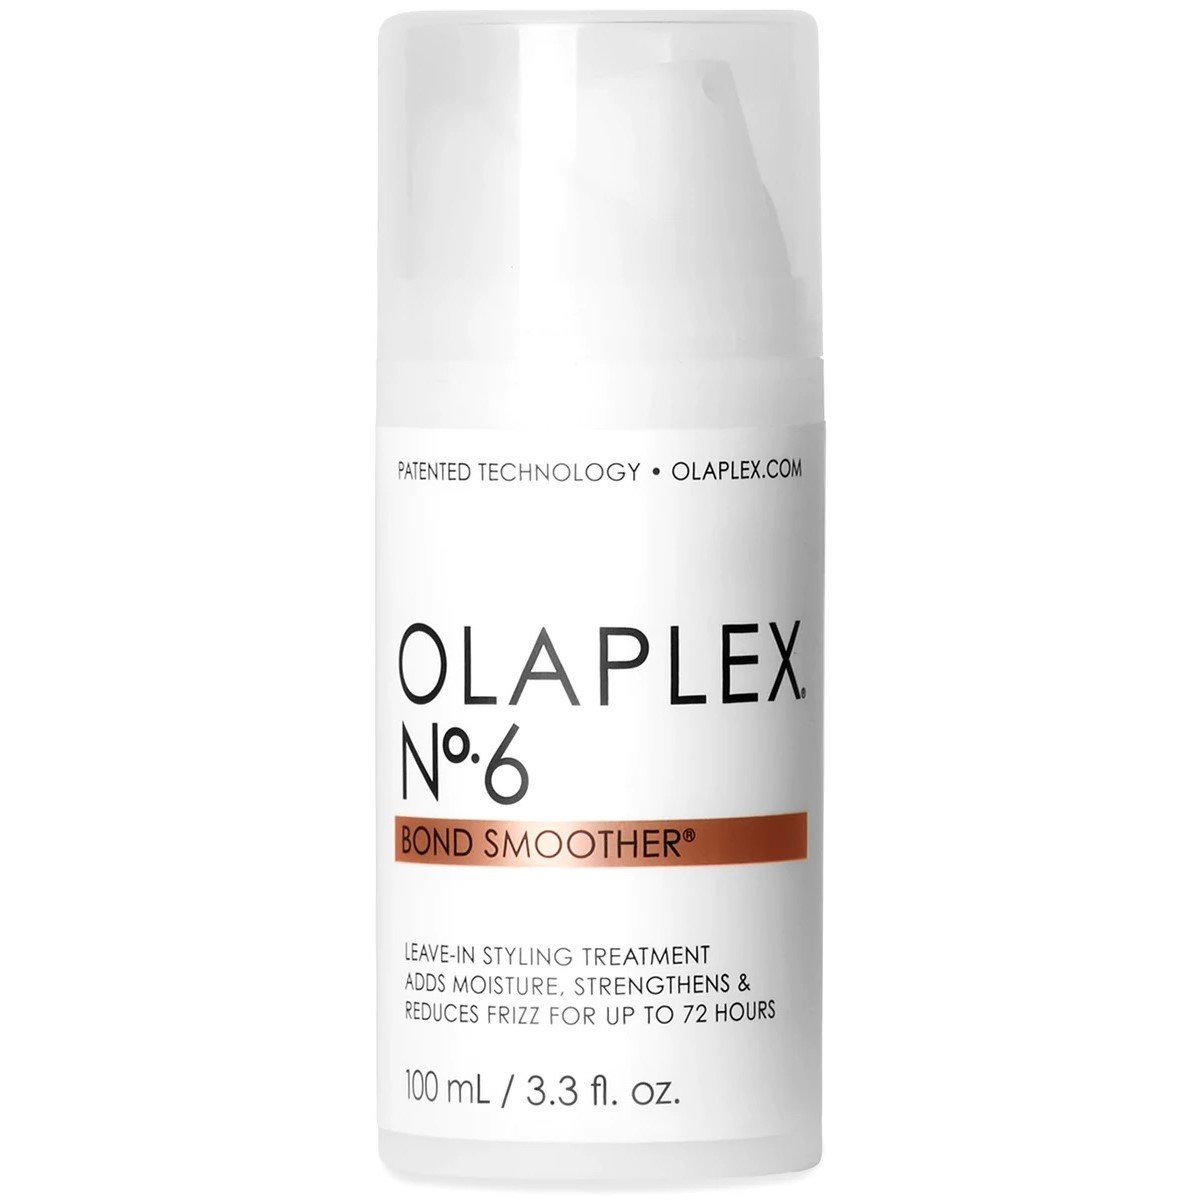 Відновлюючий крем для укладання волосся Olaplex Bond Smoother Reparative Styling Creme No.6, 100 мл - фото 1